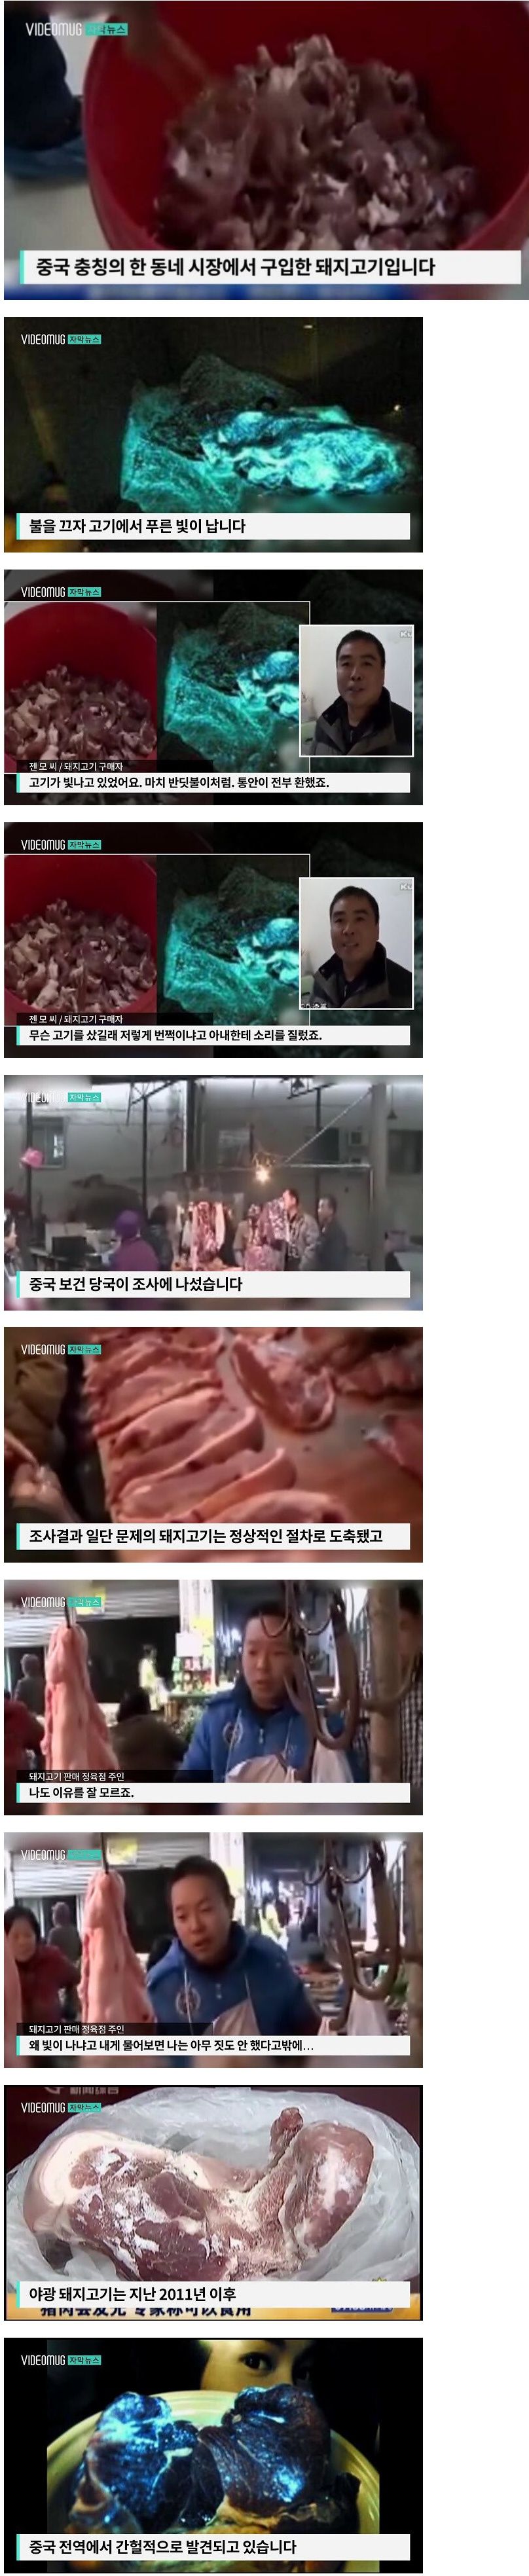 중국여행가서 돼지고기 섭취 조심해야지.jpg